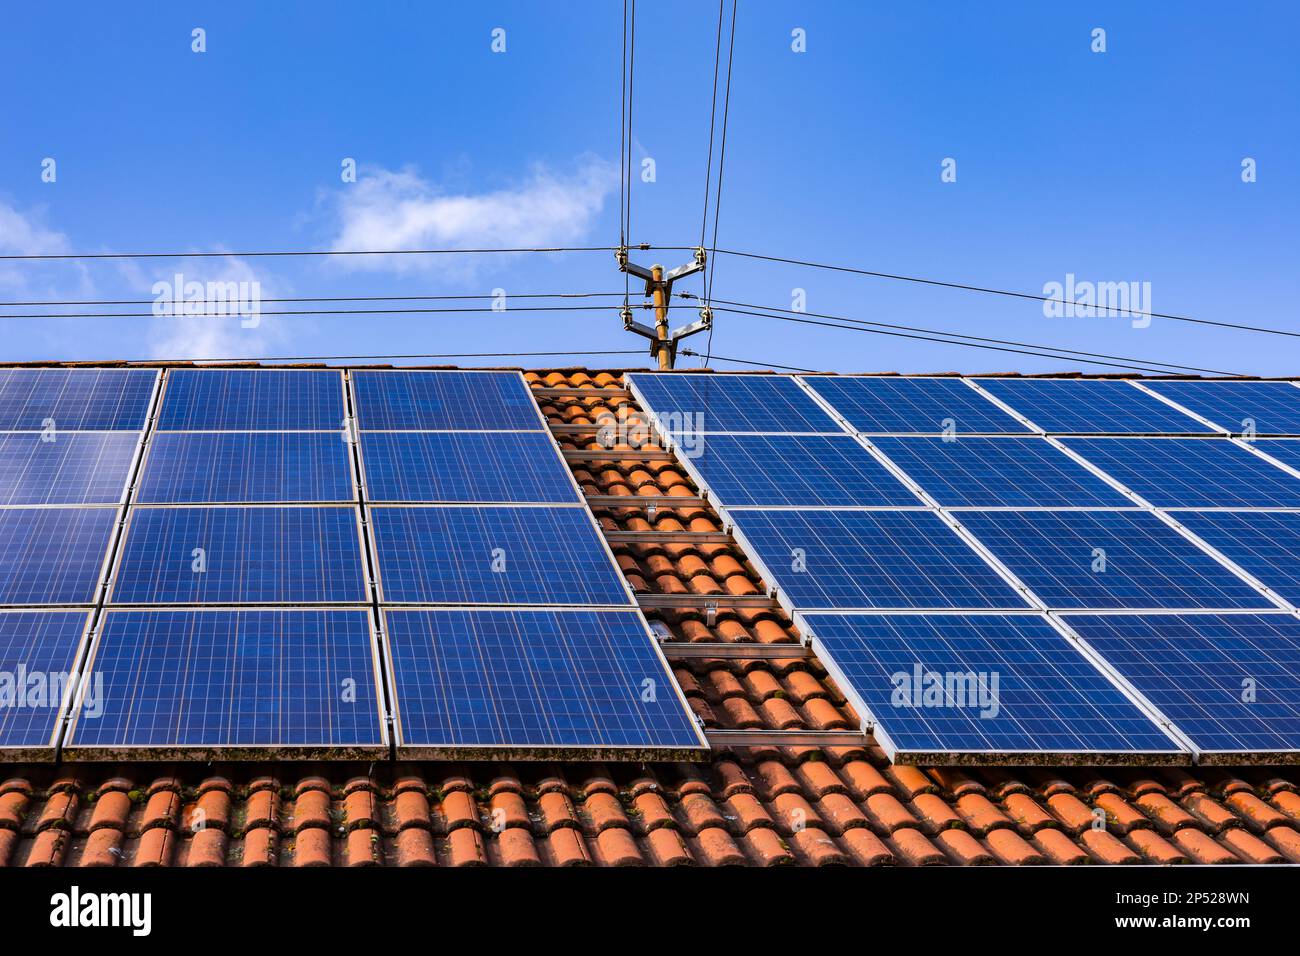 Solanpanels einer Photovoltaik-Anlage auf einem privaten Dach mit Strommast und Stromkabeln Stockfoto